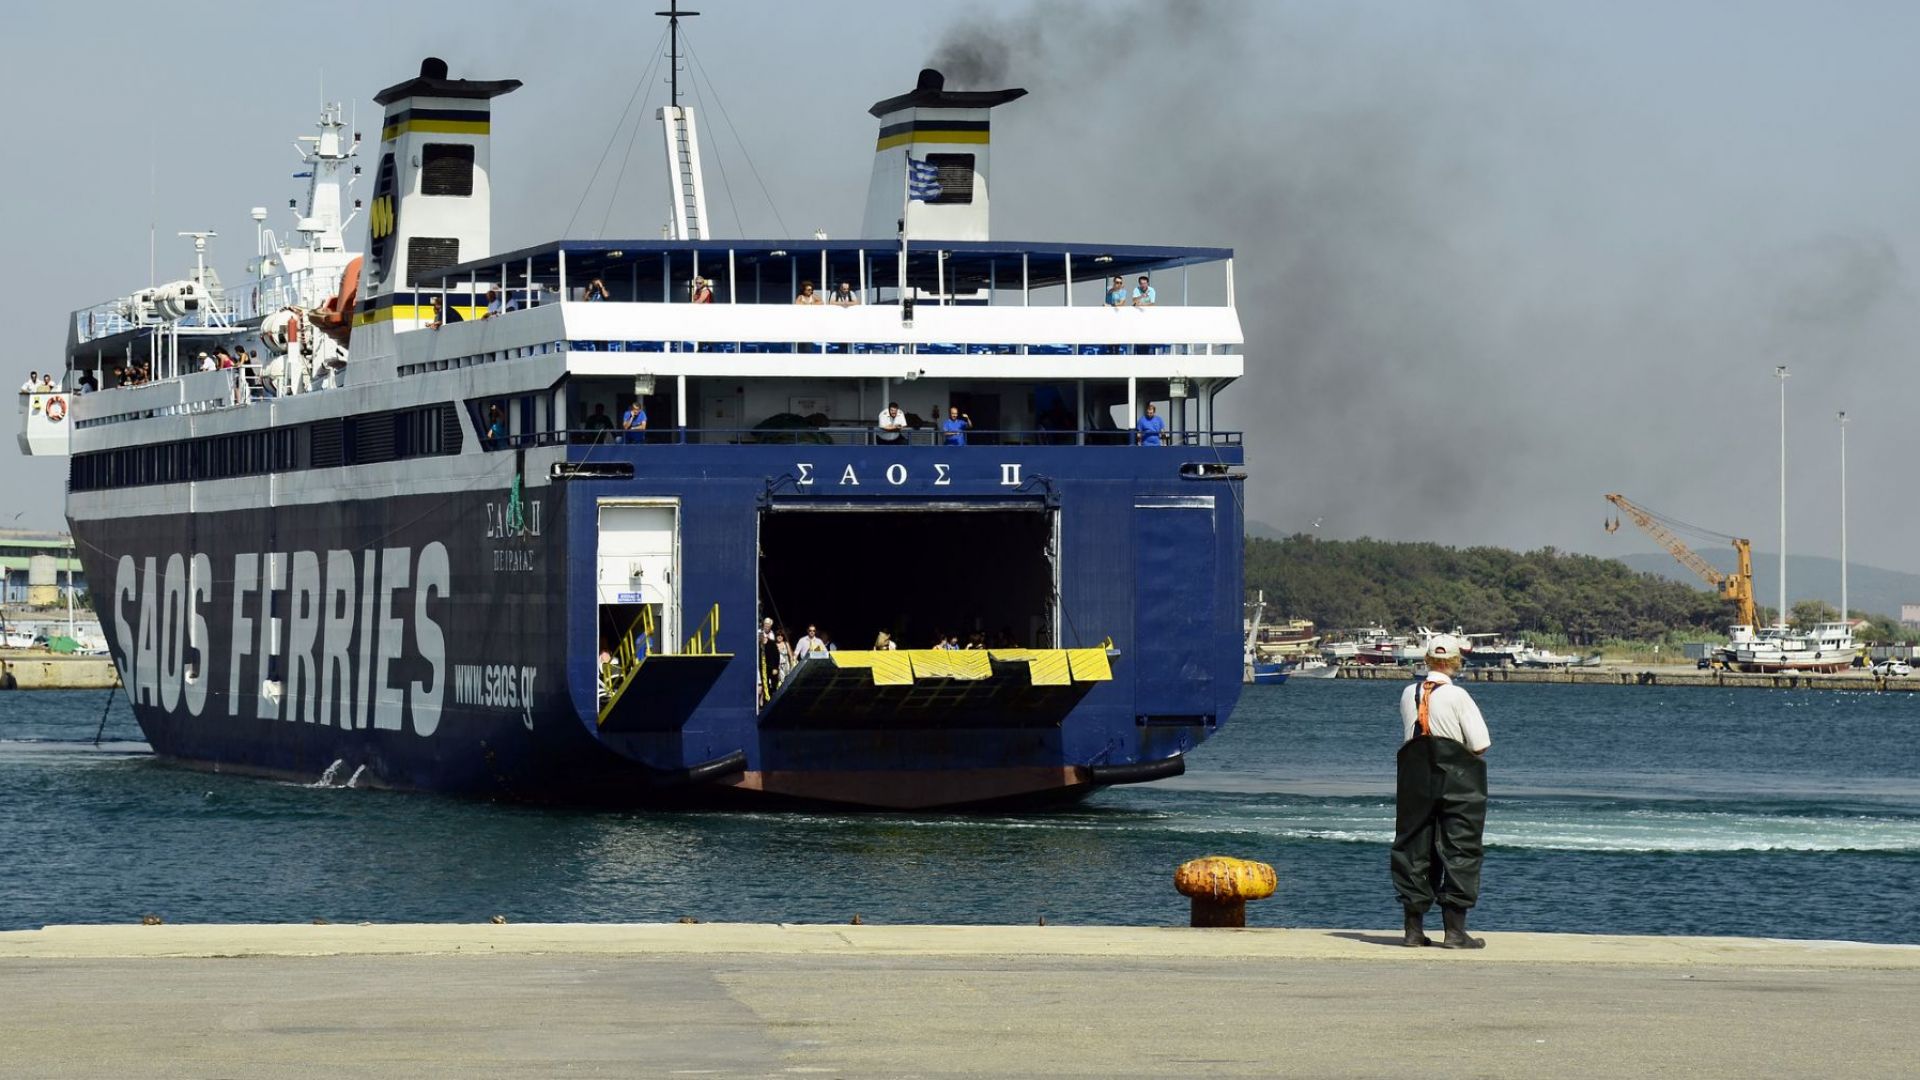 Хаосът на гръцкия остров Самотраки където са блокирани стотици туристи